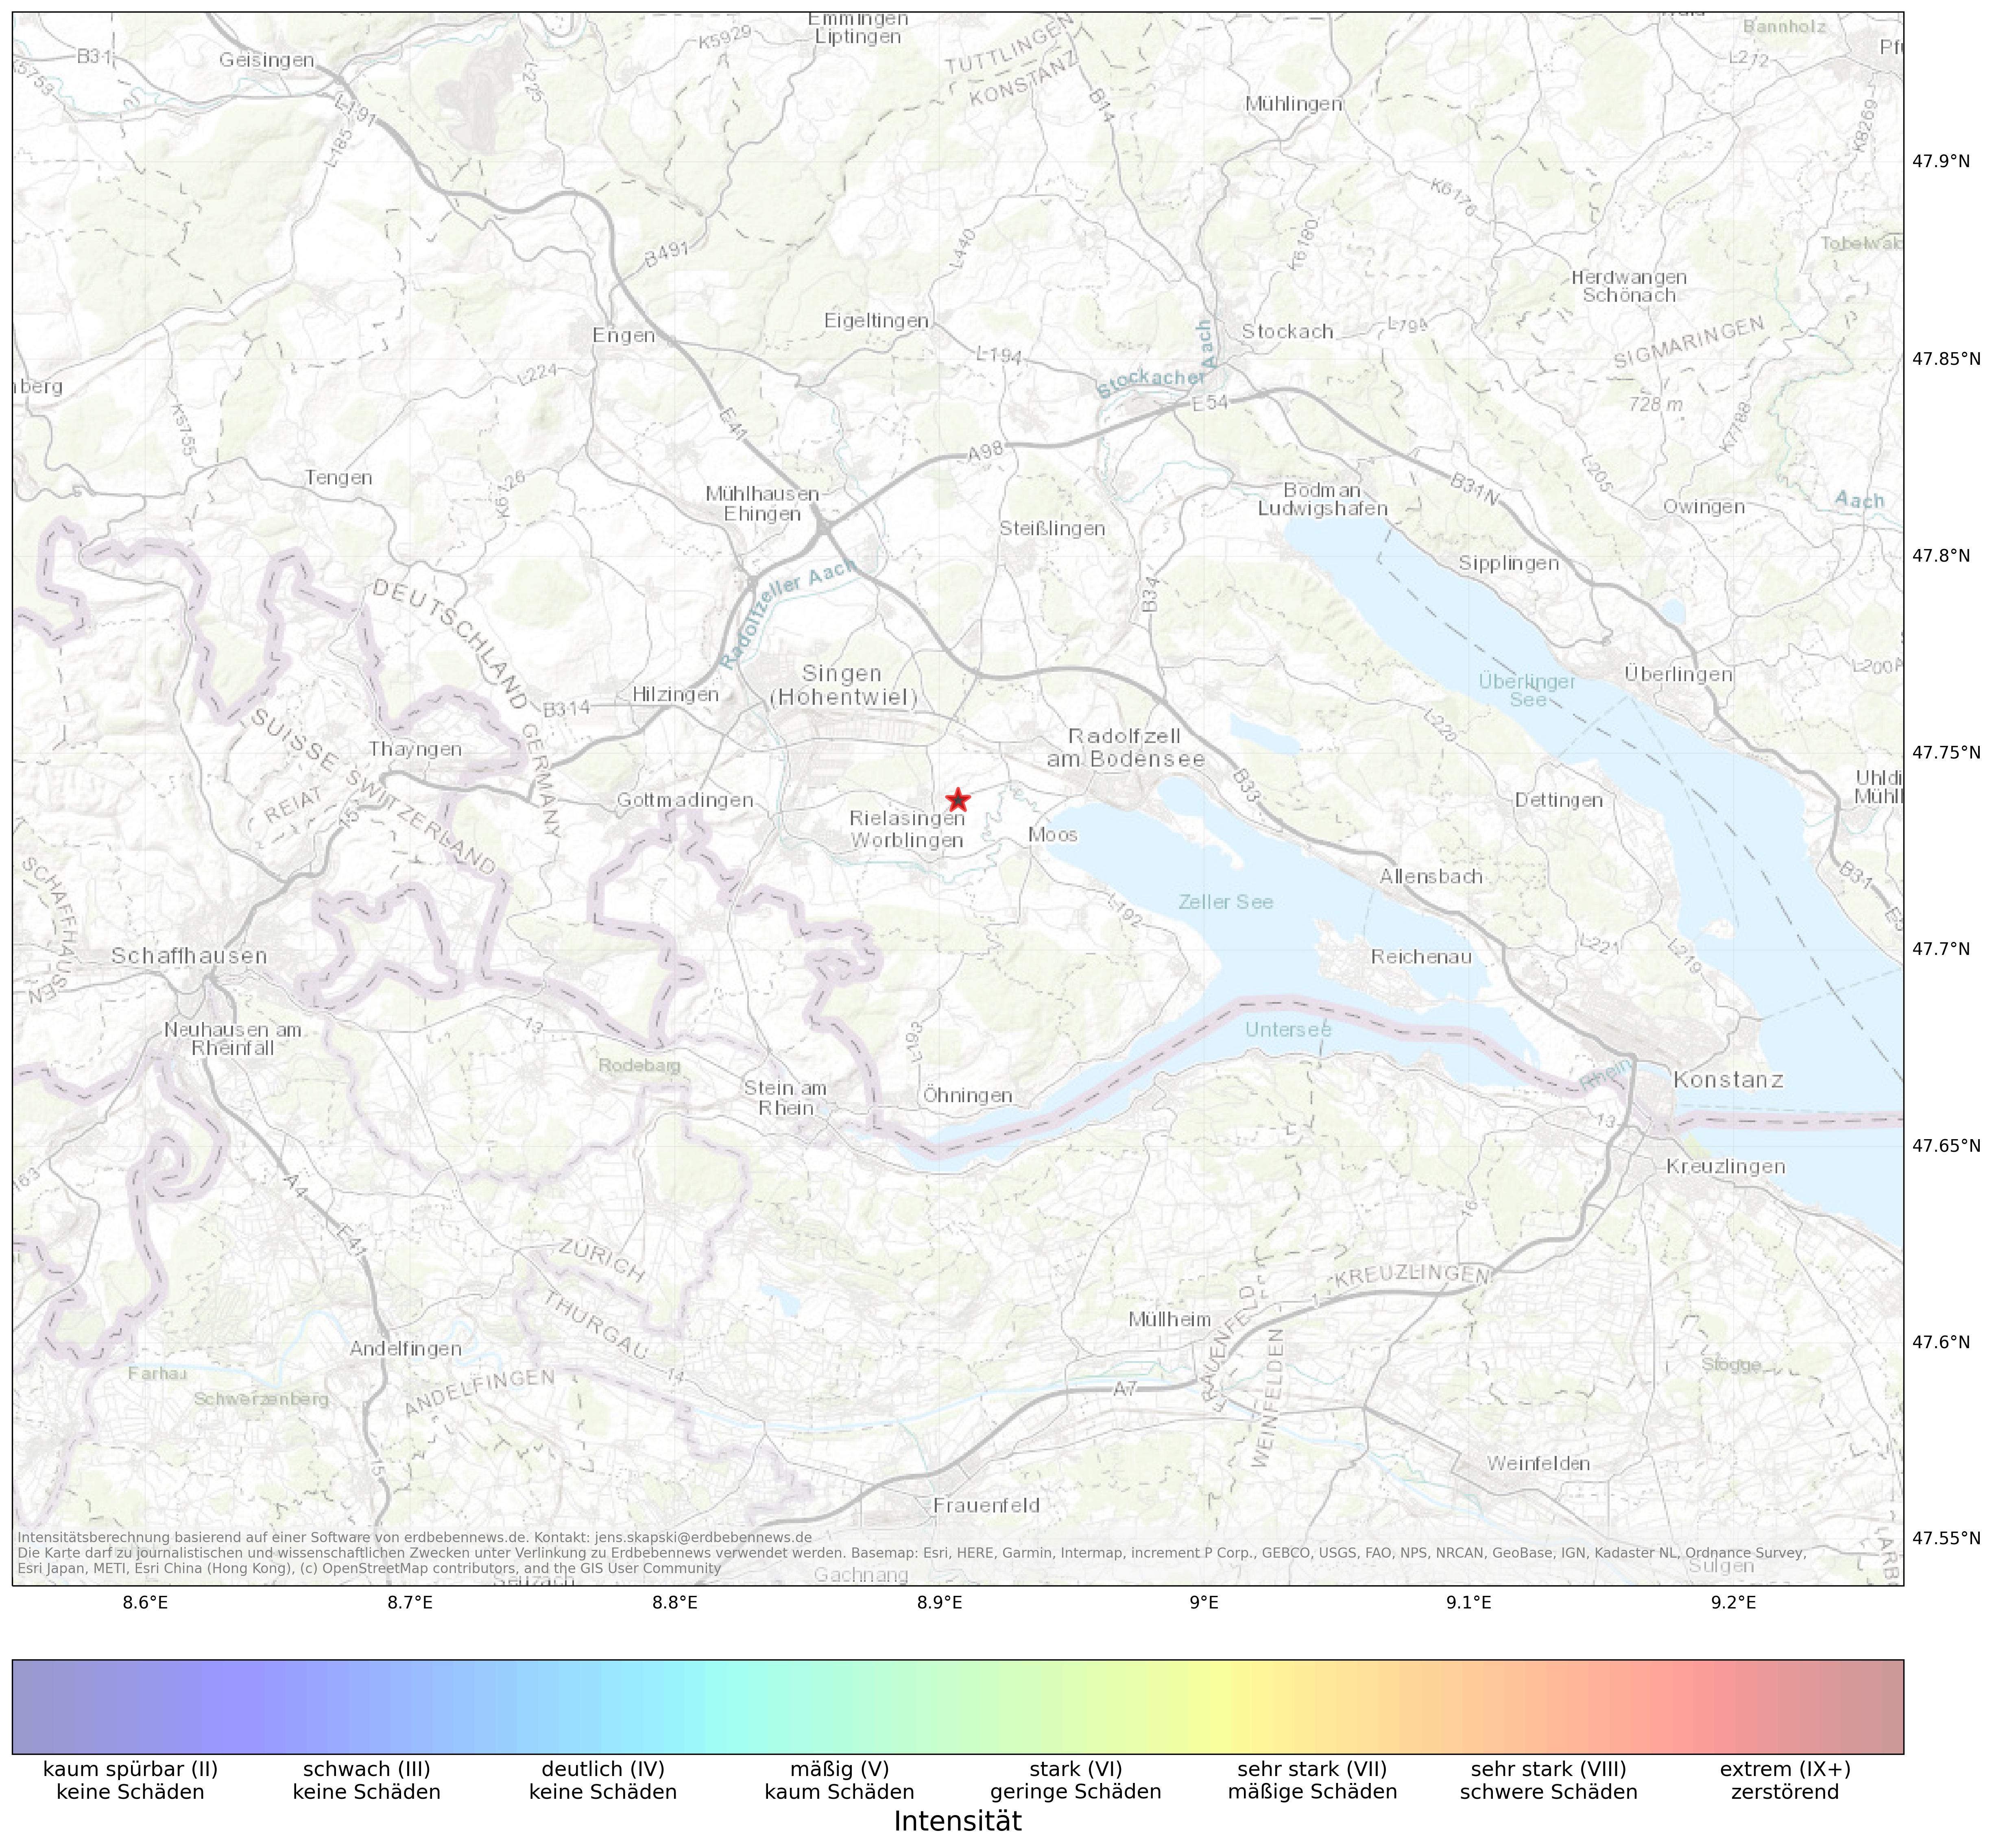 Berechnete Intensität (ShakeMap) des Erdbebens der Stärke 1.9 am 25. March, 20:53 in Deutschland